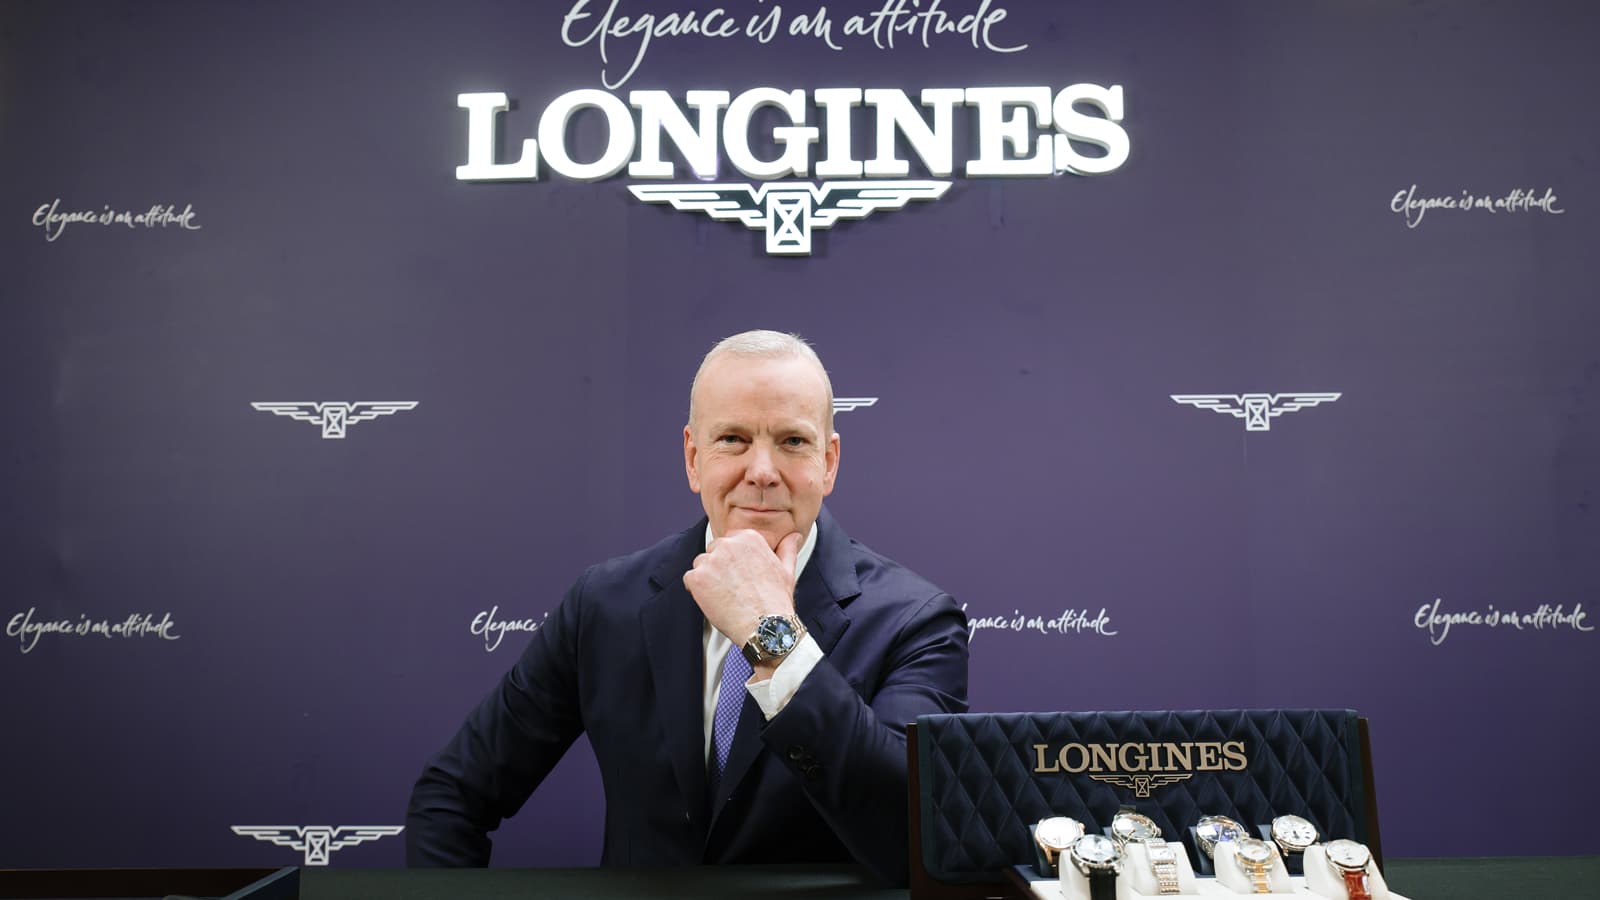 Ông Matthias Breschan - CEO của Longines: "Nếu xét tương quan giữa giá trị và giá bán, Longines gần như không có đối thủ"